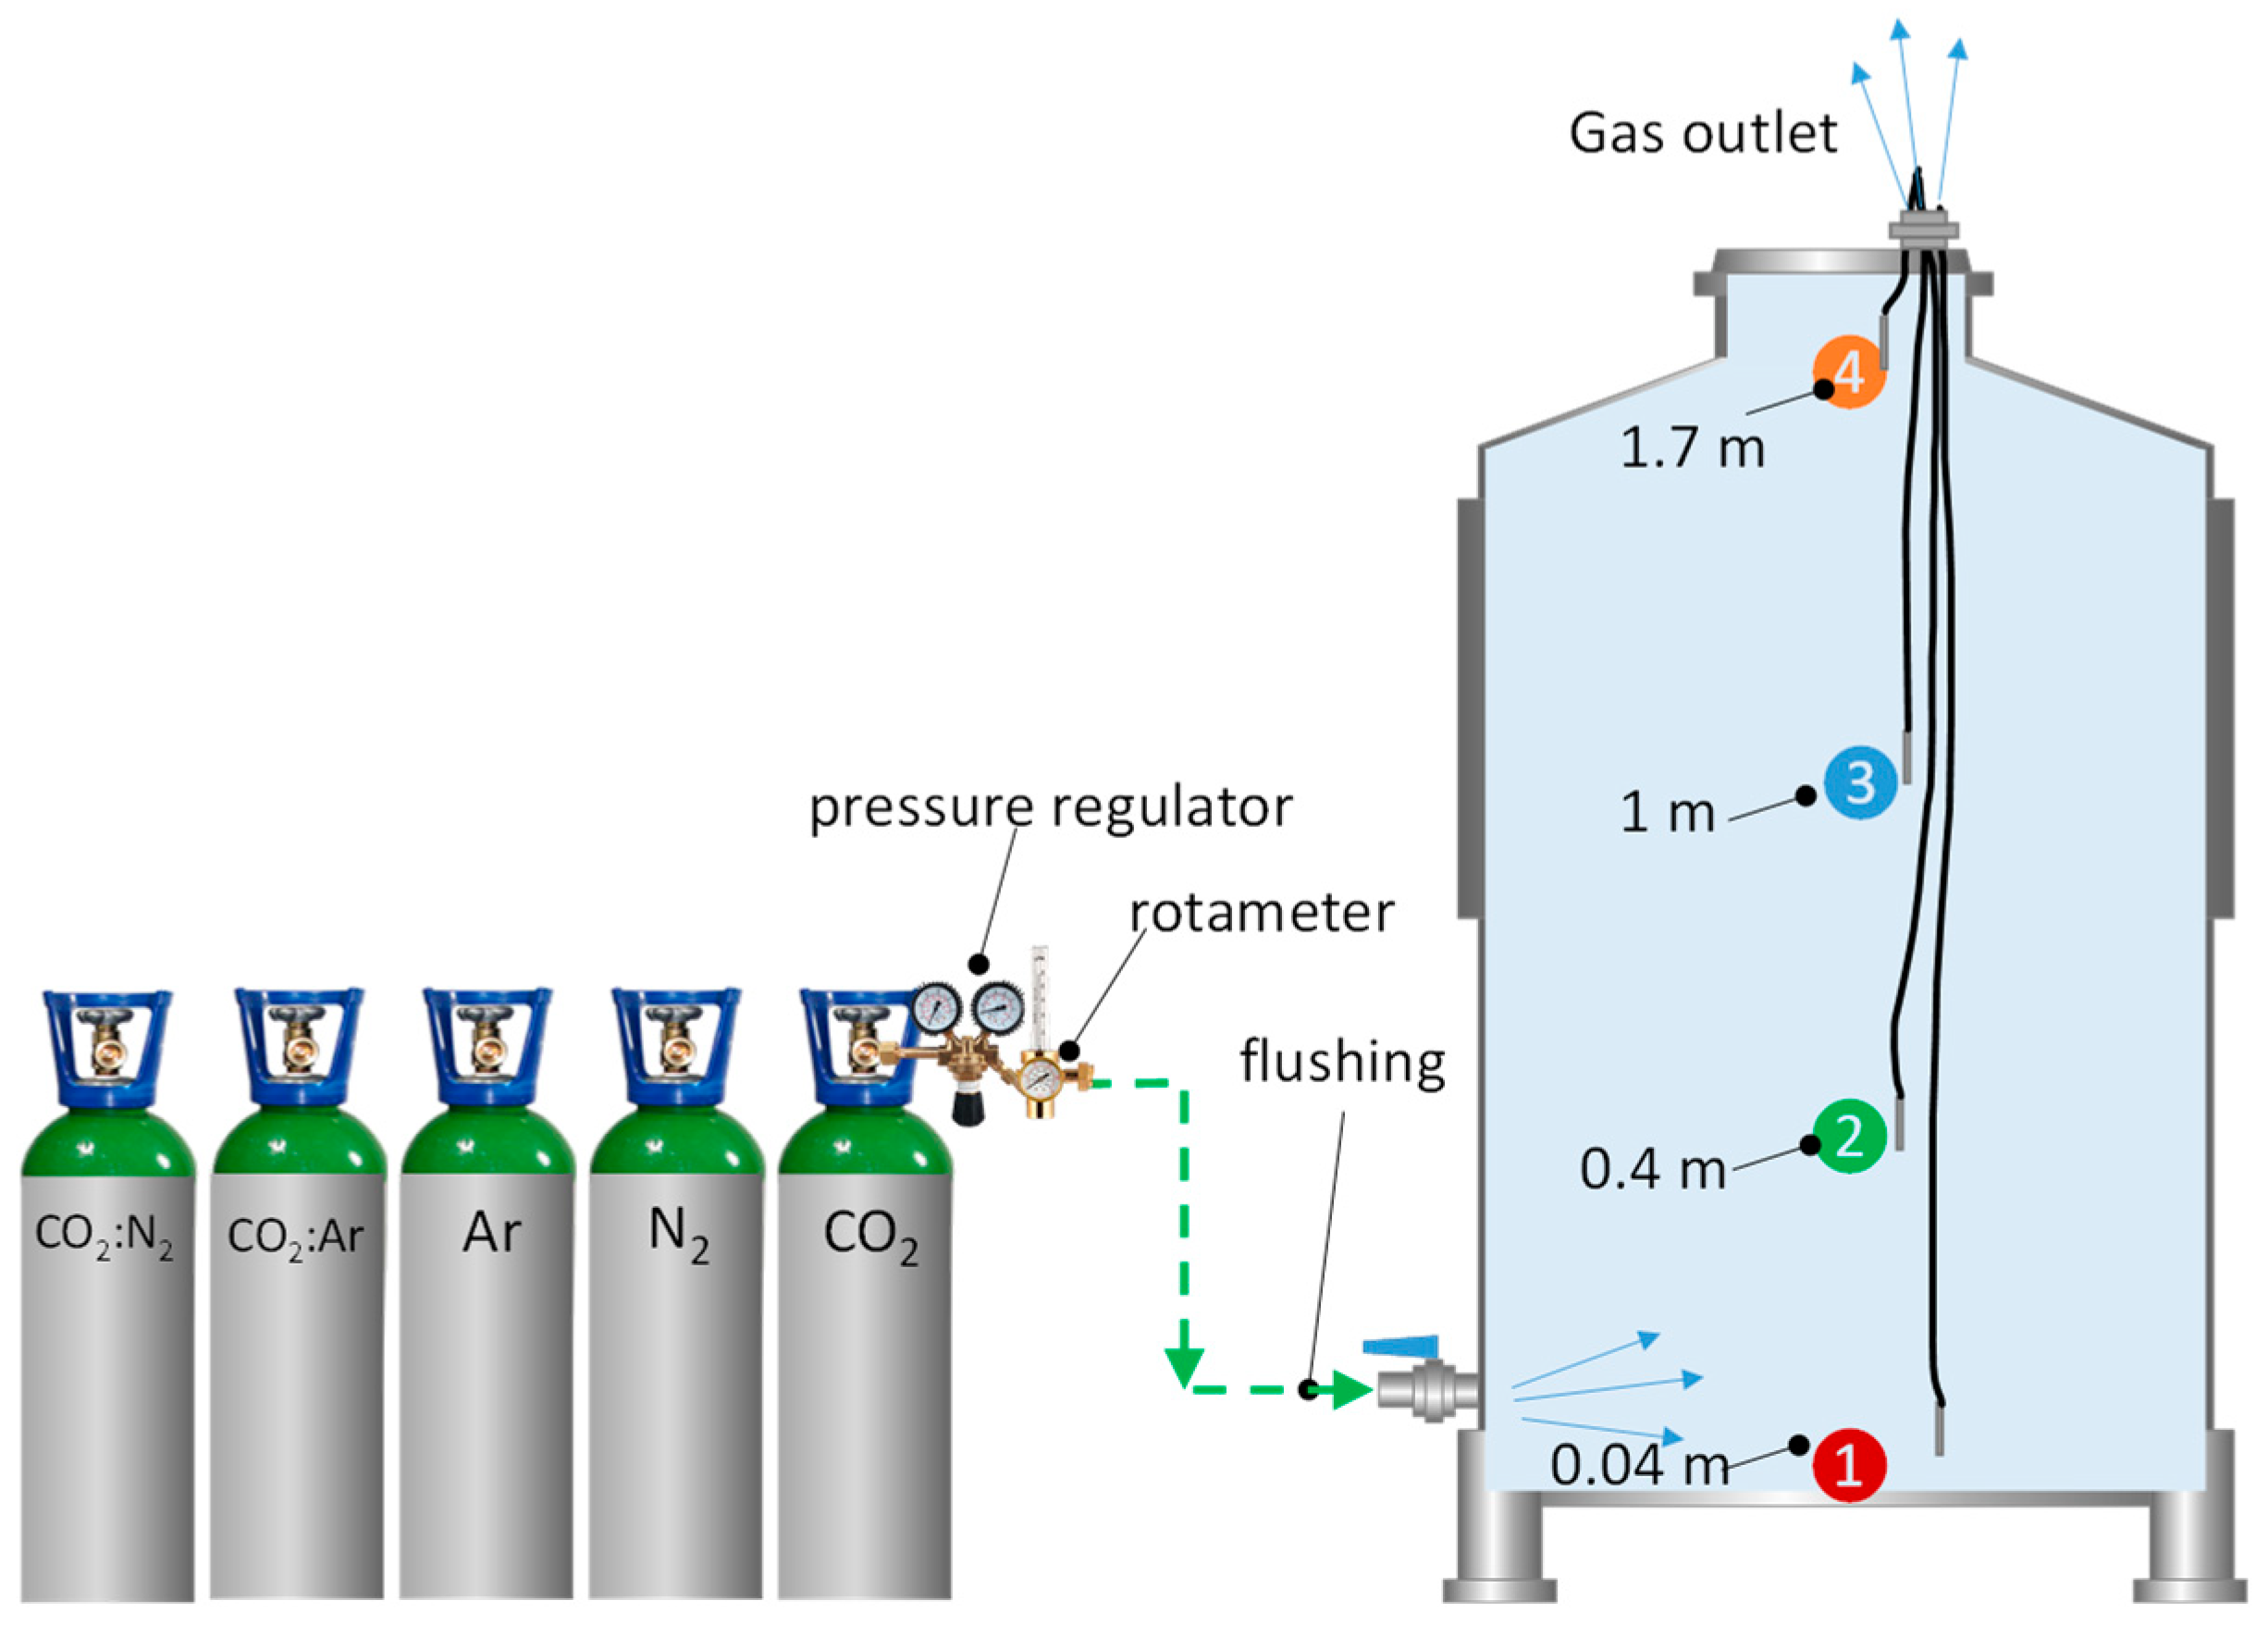 Nitrógeno 20 L 200 N2 STD GAS - Gases Refrigerantes Europa